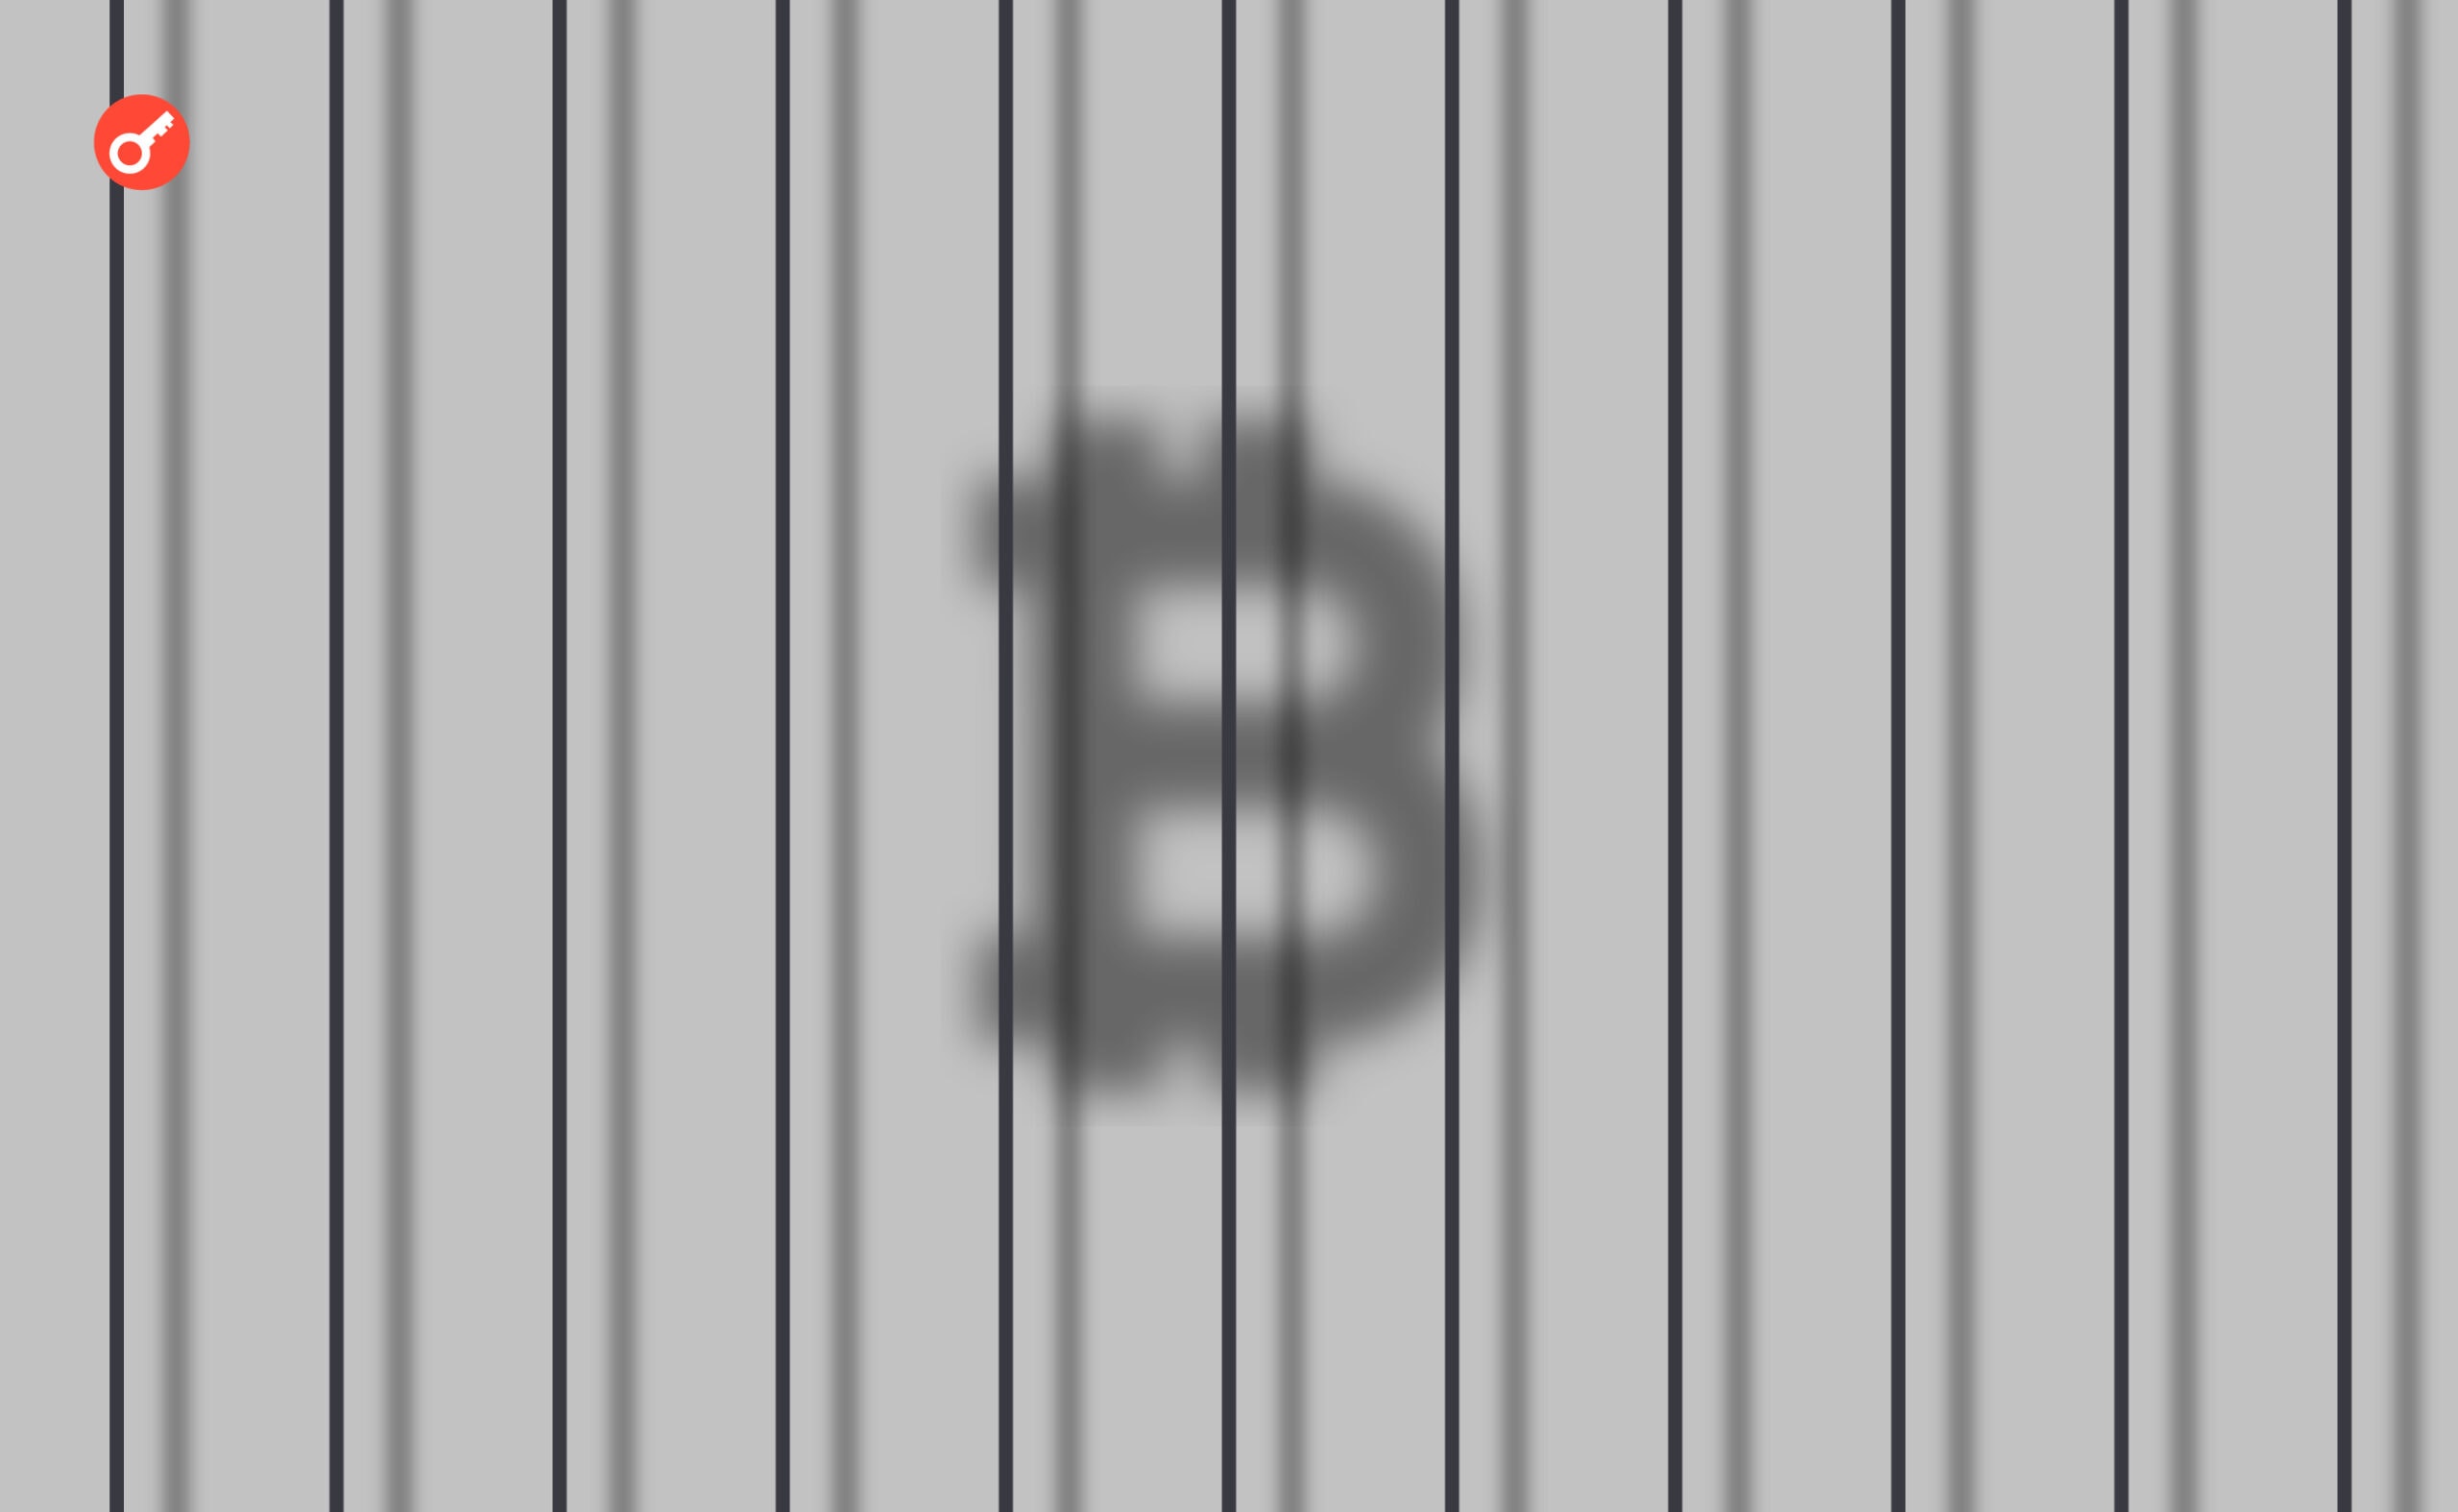 USA po raz pierwszy da 7 lat więzienia za «shadow crypto banking». Główny kolaż wiadomości.